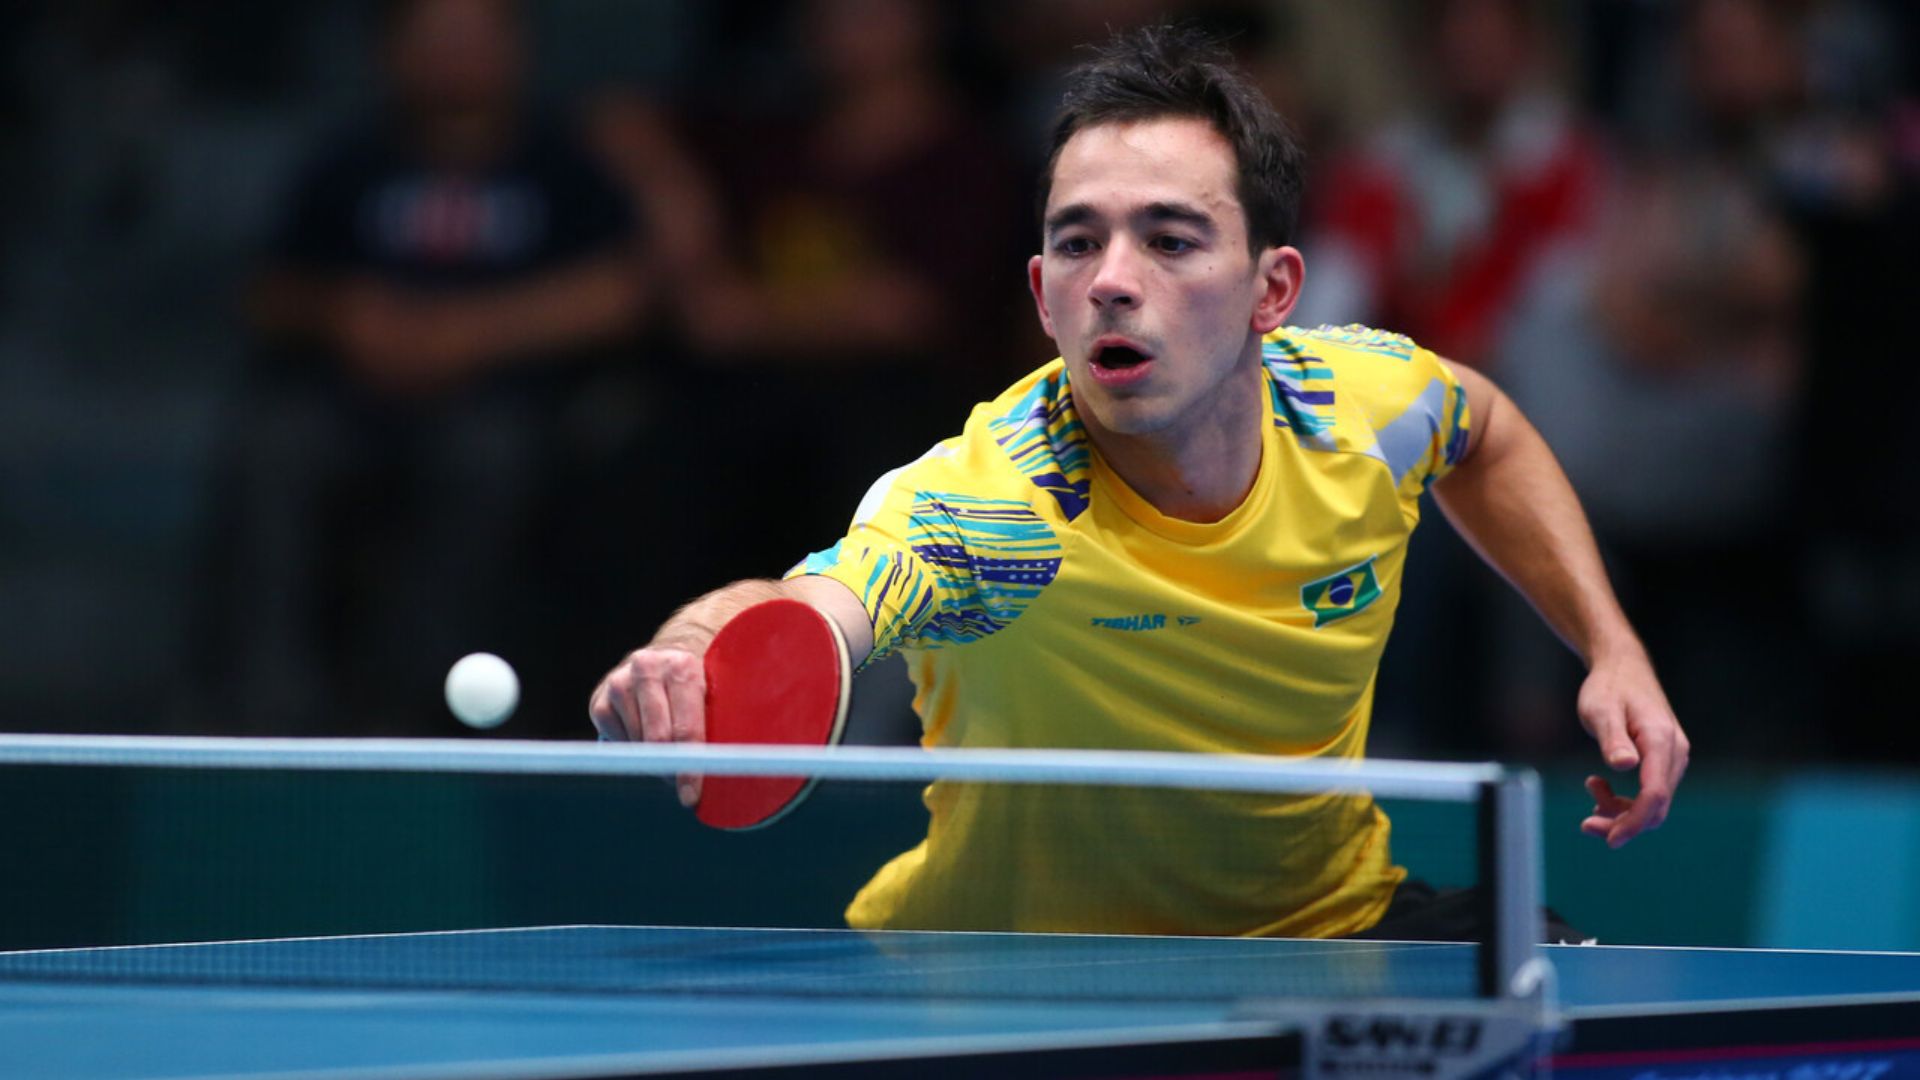 El brasileño Hugo Calderano sigue firme rumbo a una medalla en el tenis de mesa